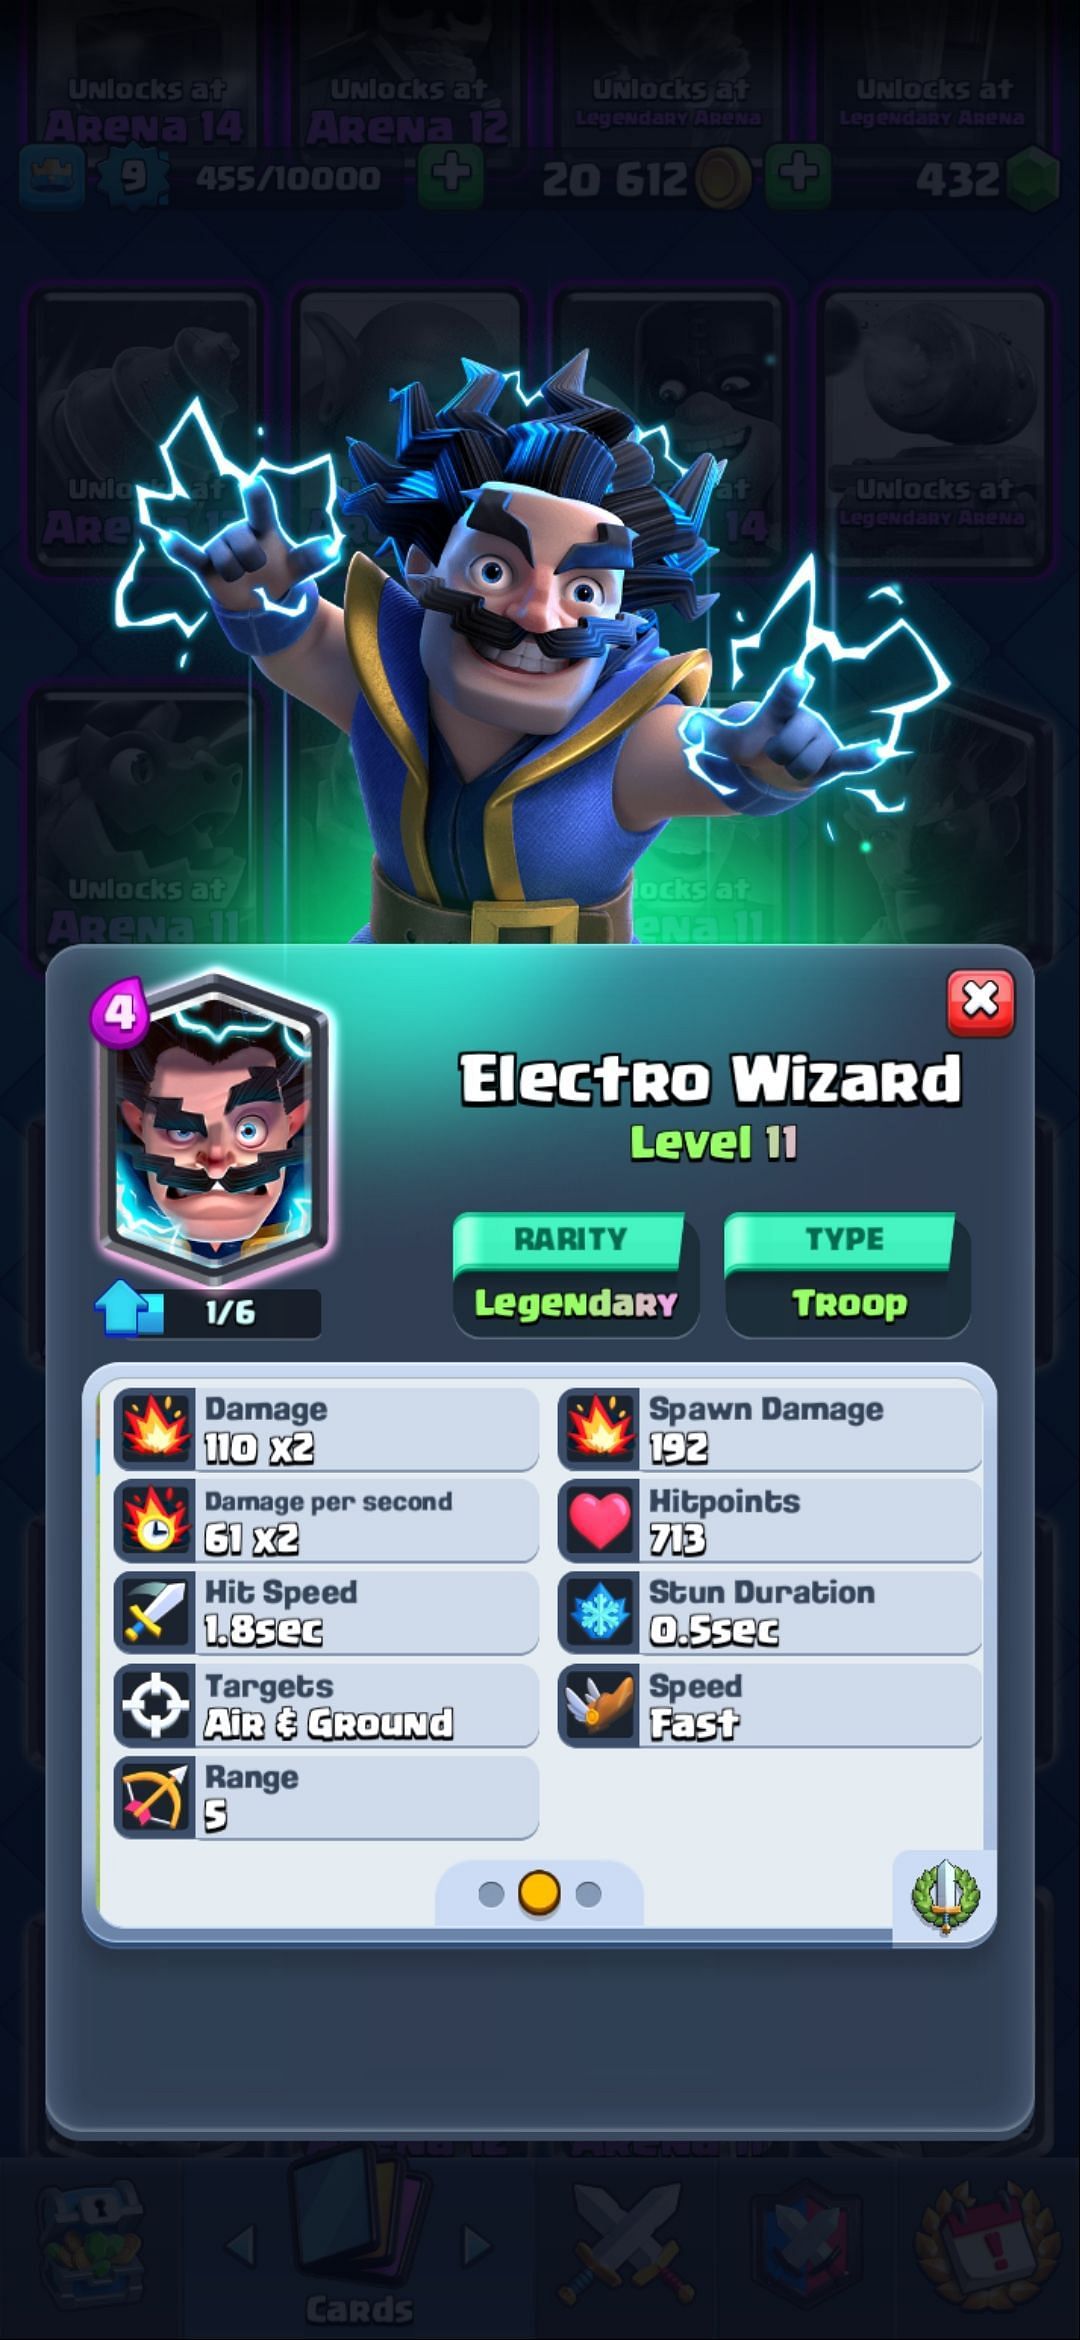 The Electro Wizard in Clash Royale (Image via Sportskeeda)